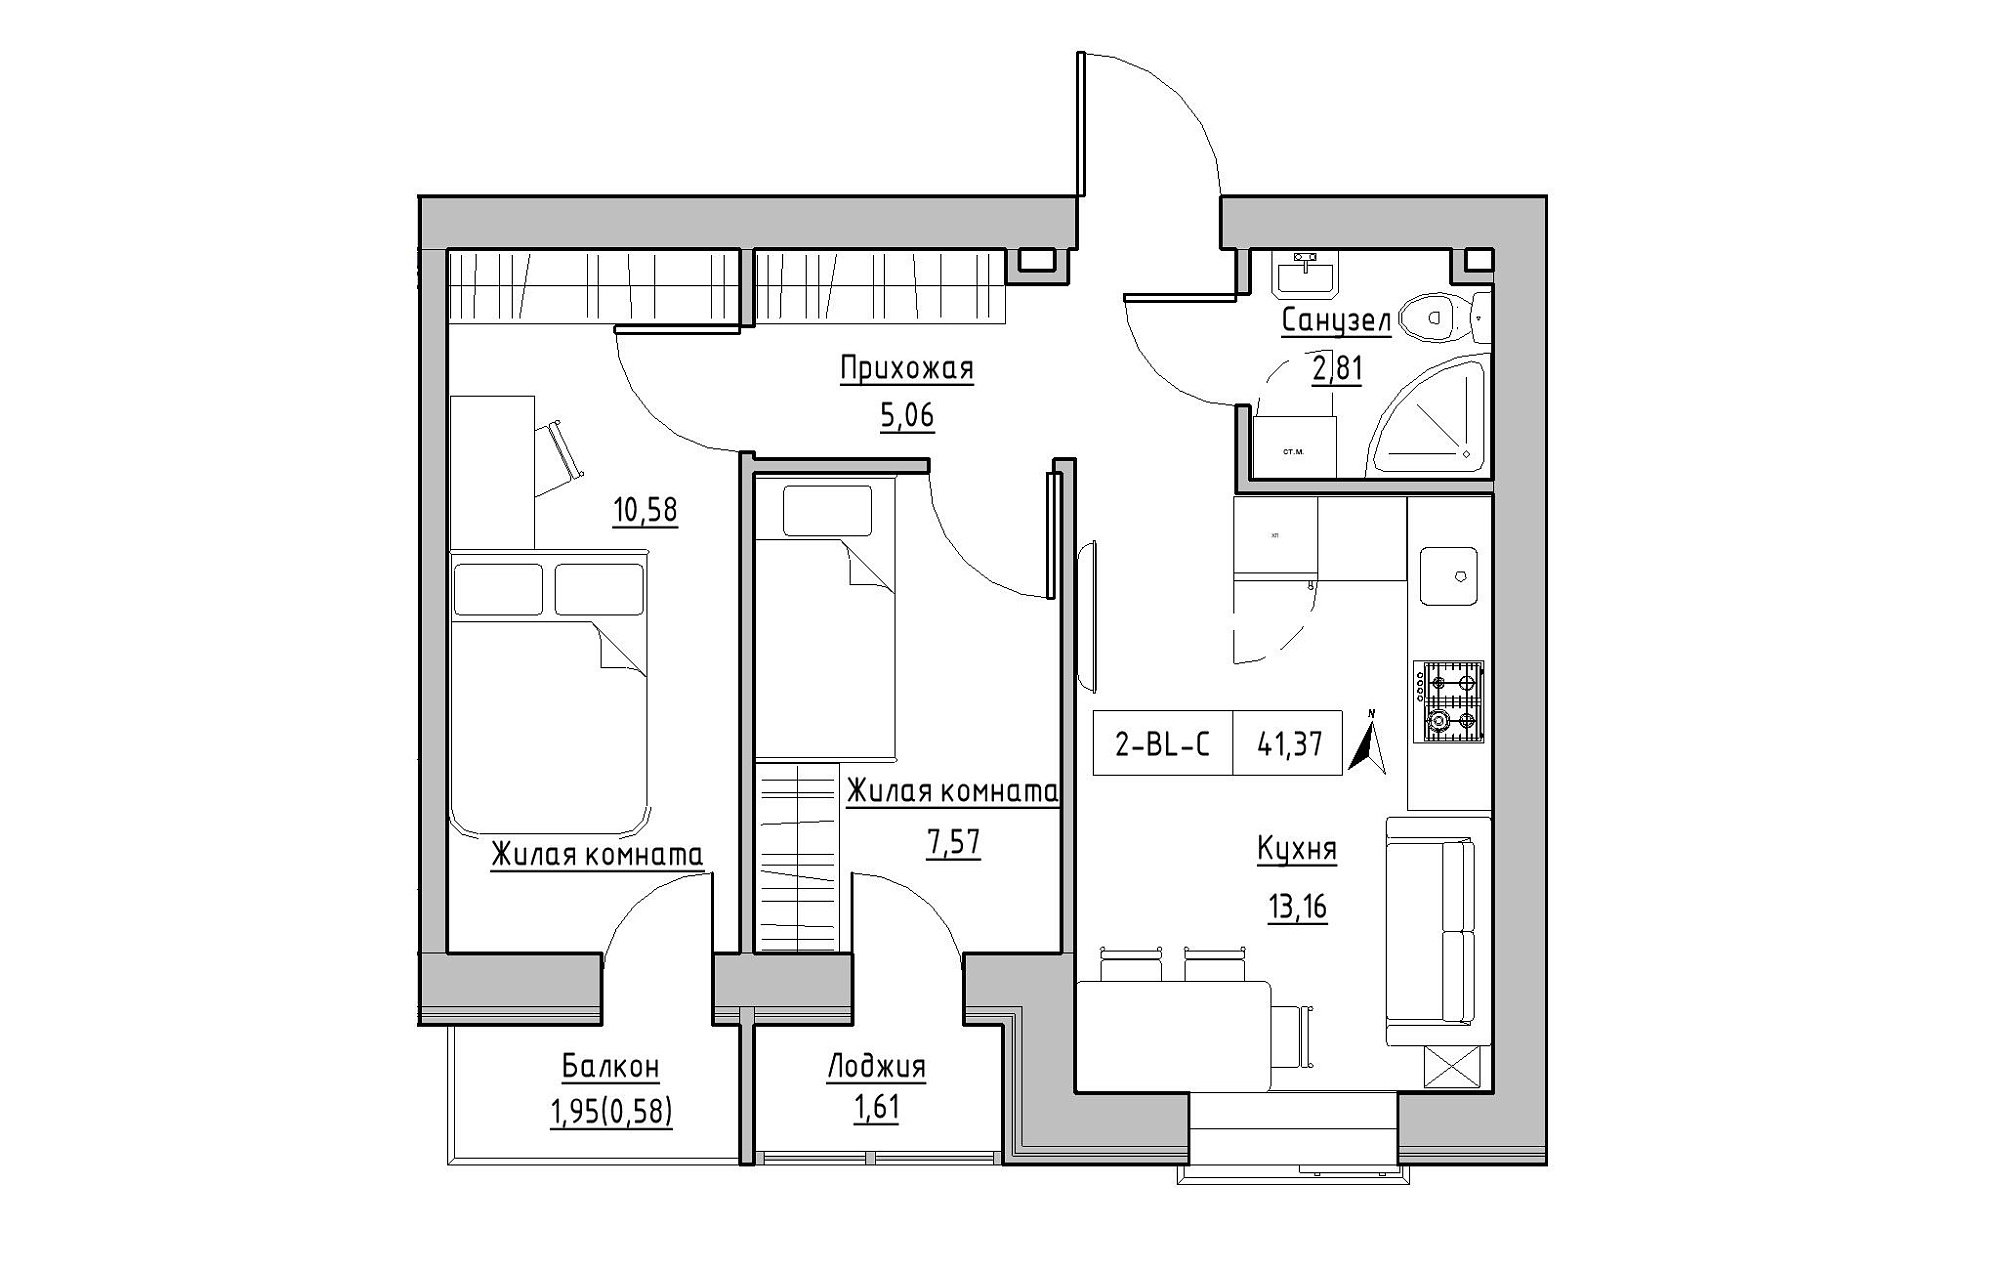 Планировка 2-к квартира площей 41.37м2, KS-019-04/0011.